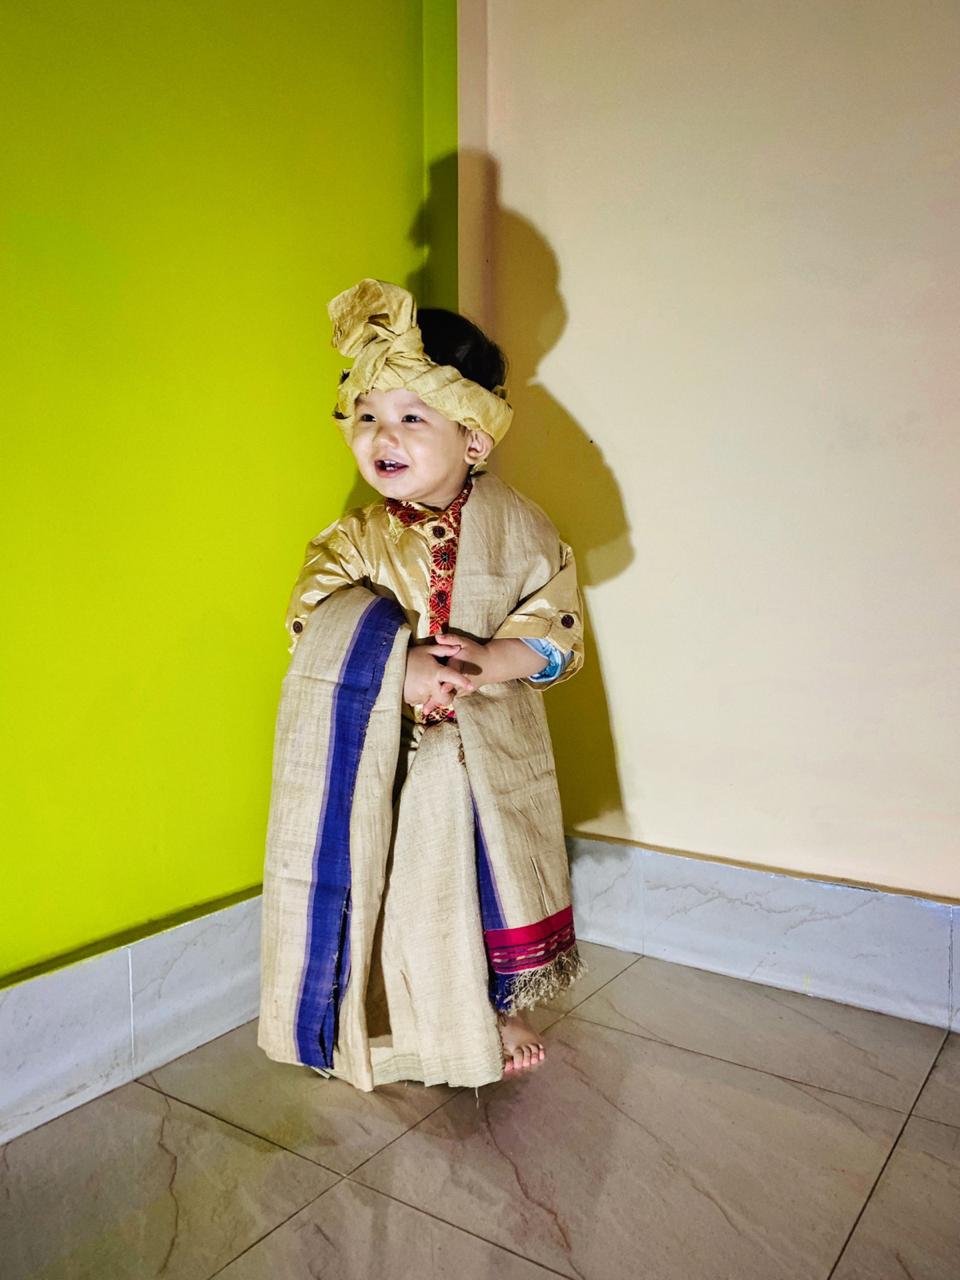 Ahom dress worn by a child